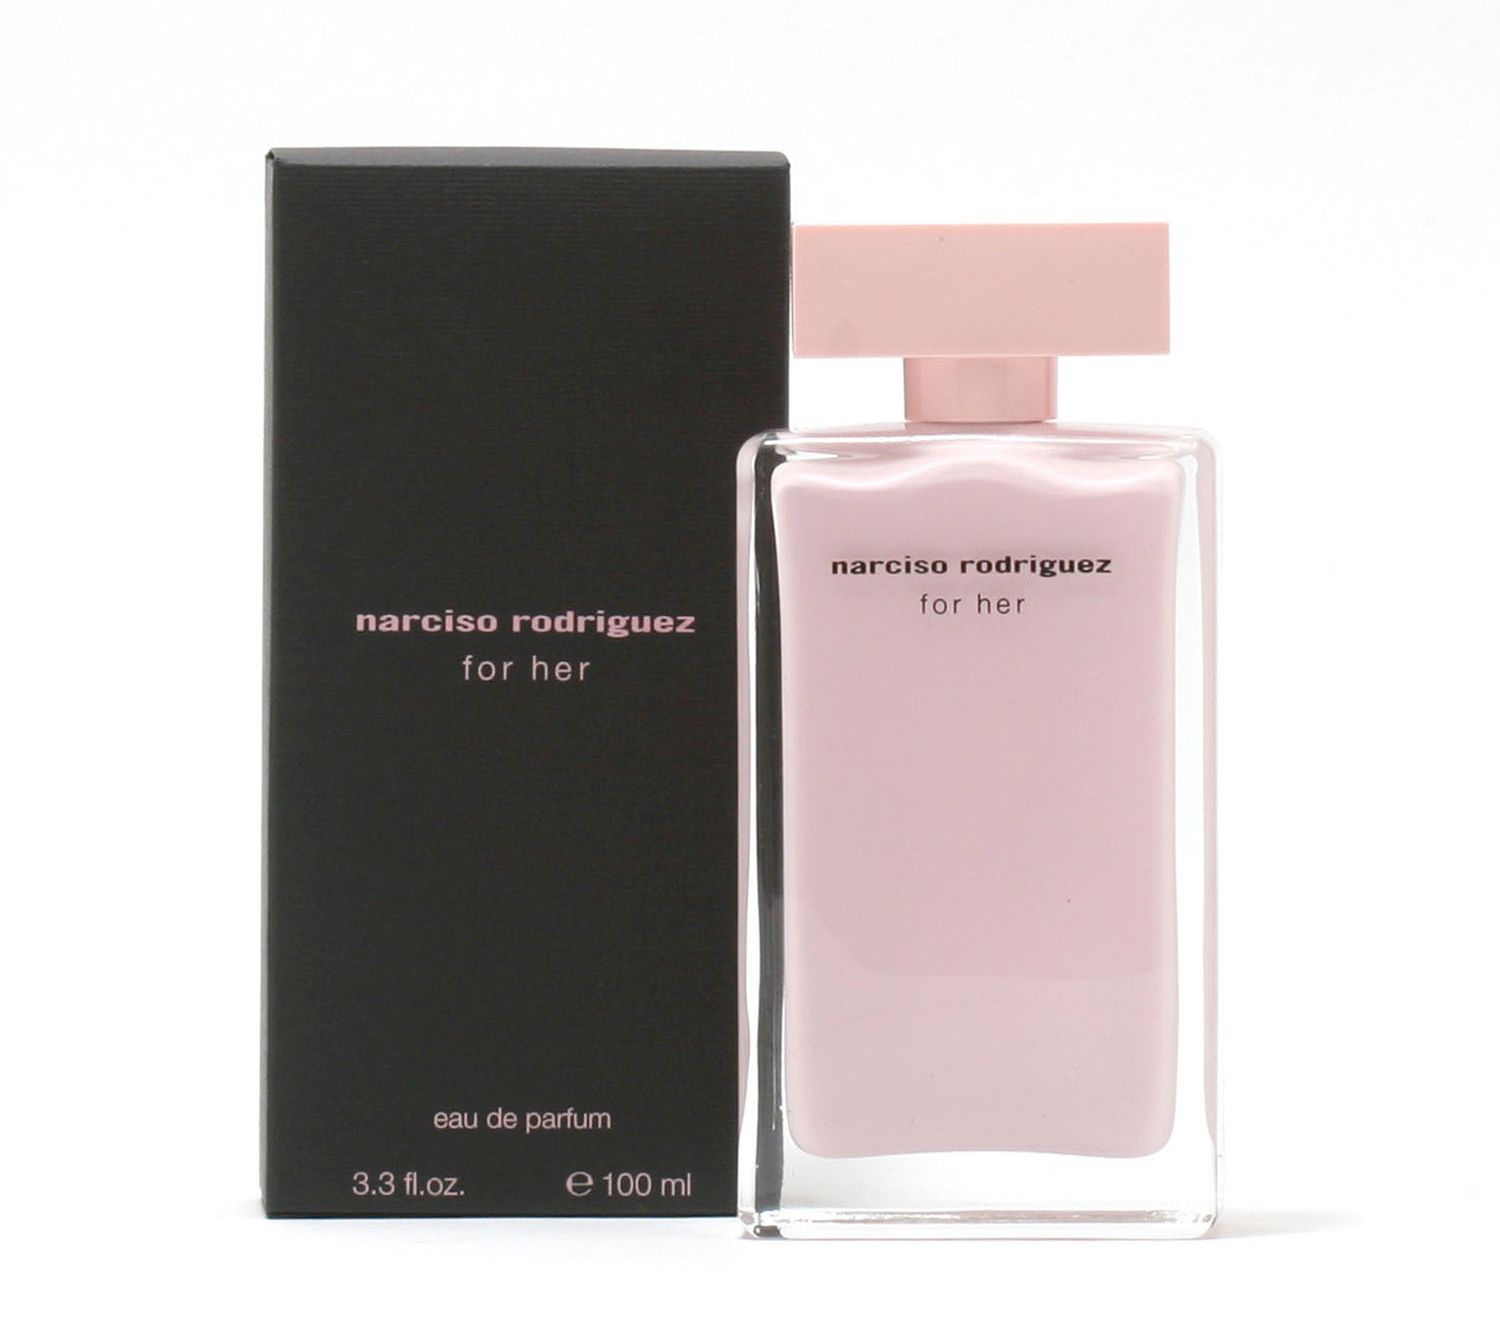 Her Narciso oz For De Parfum Spray,3.3-fl Rodriguez Eau